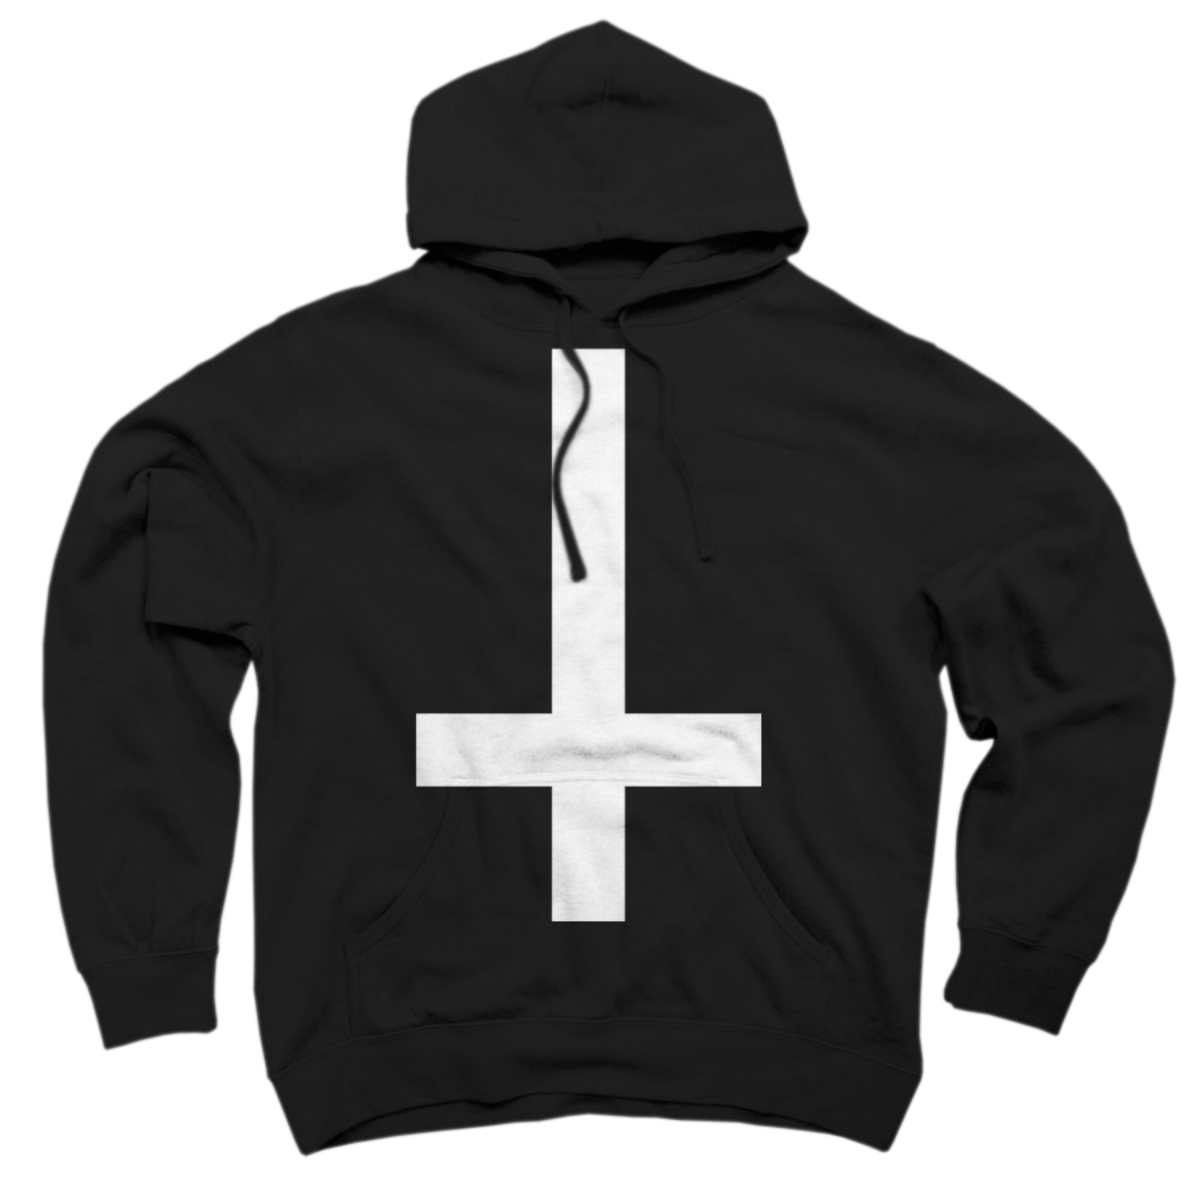 inverted cross hoodie